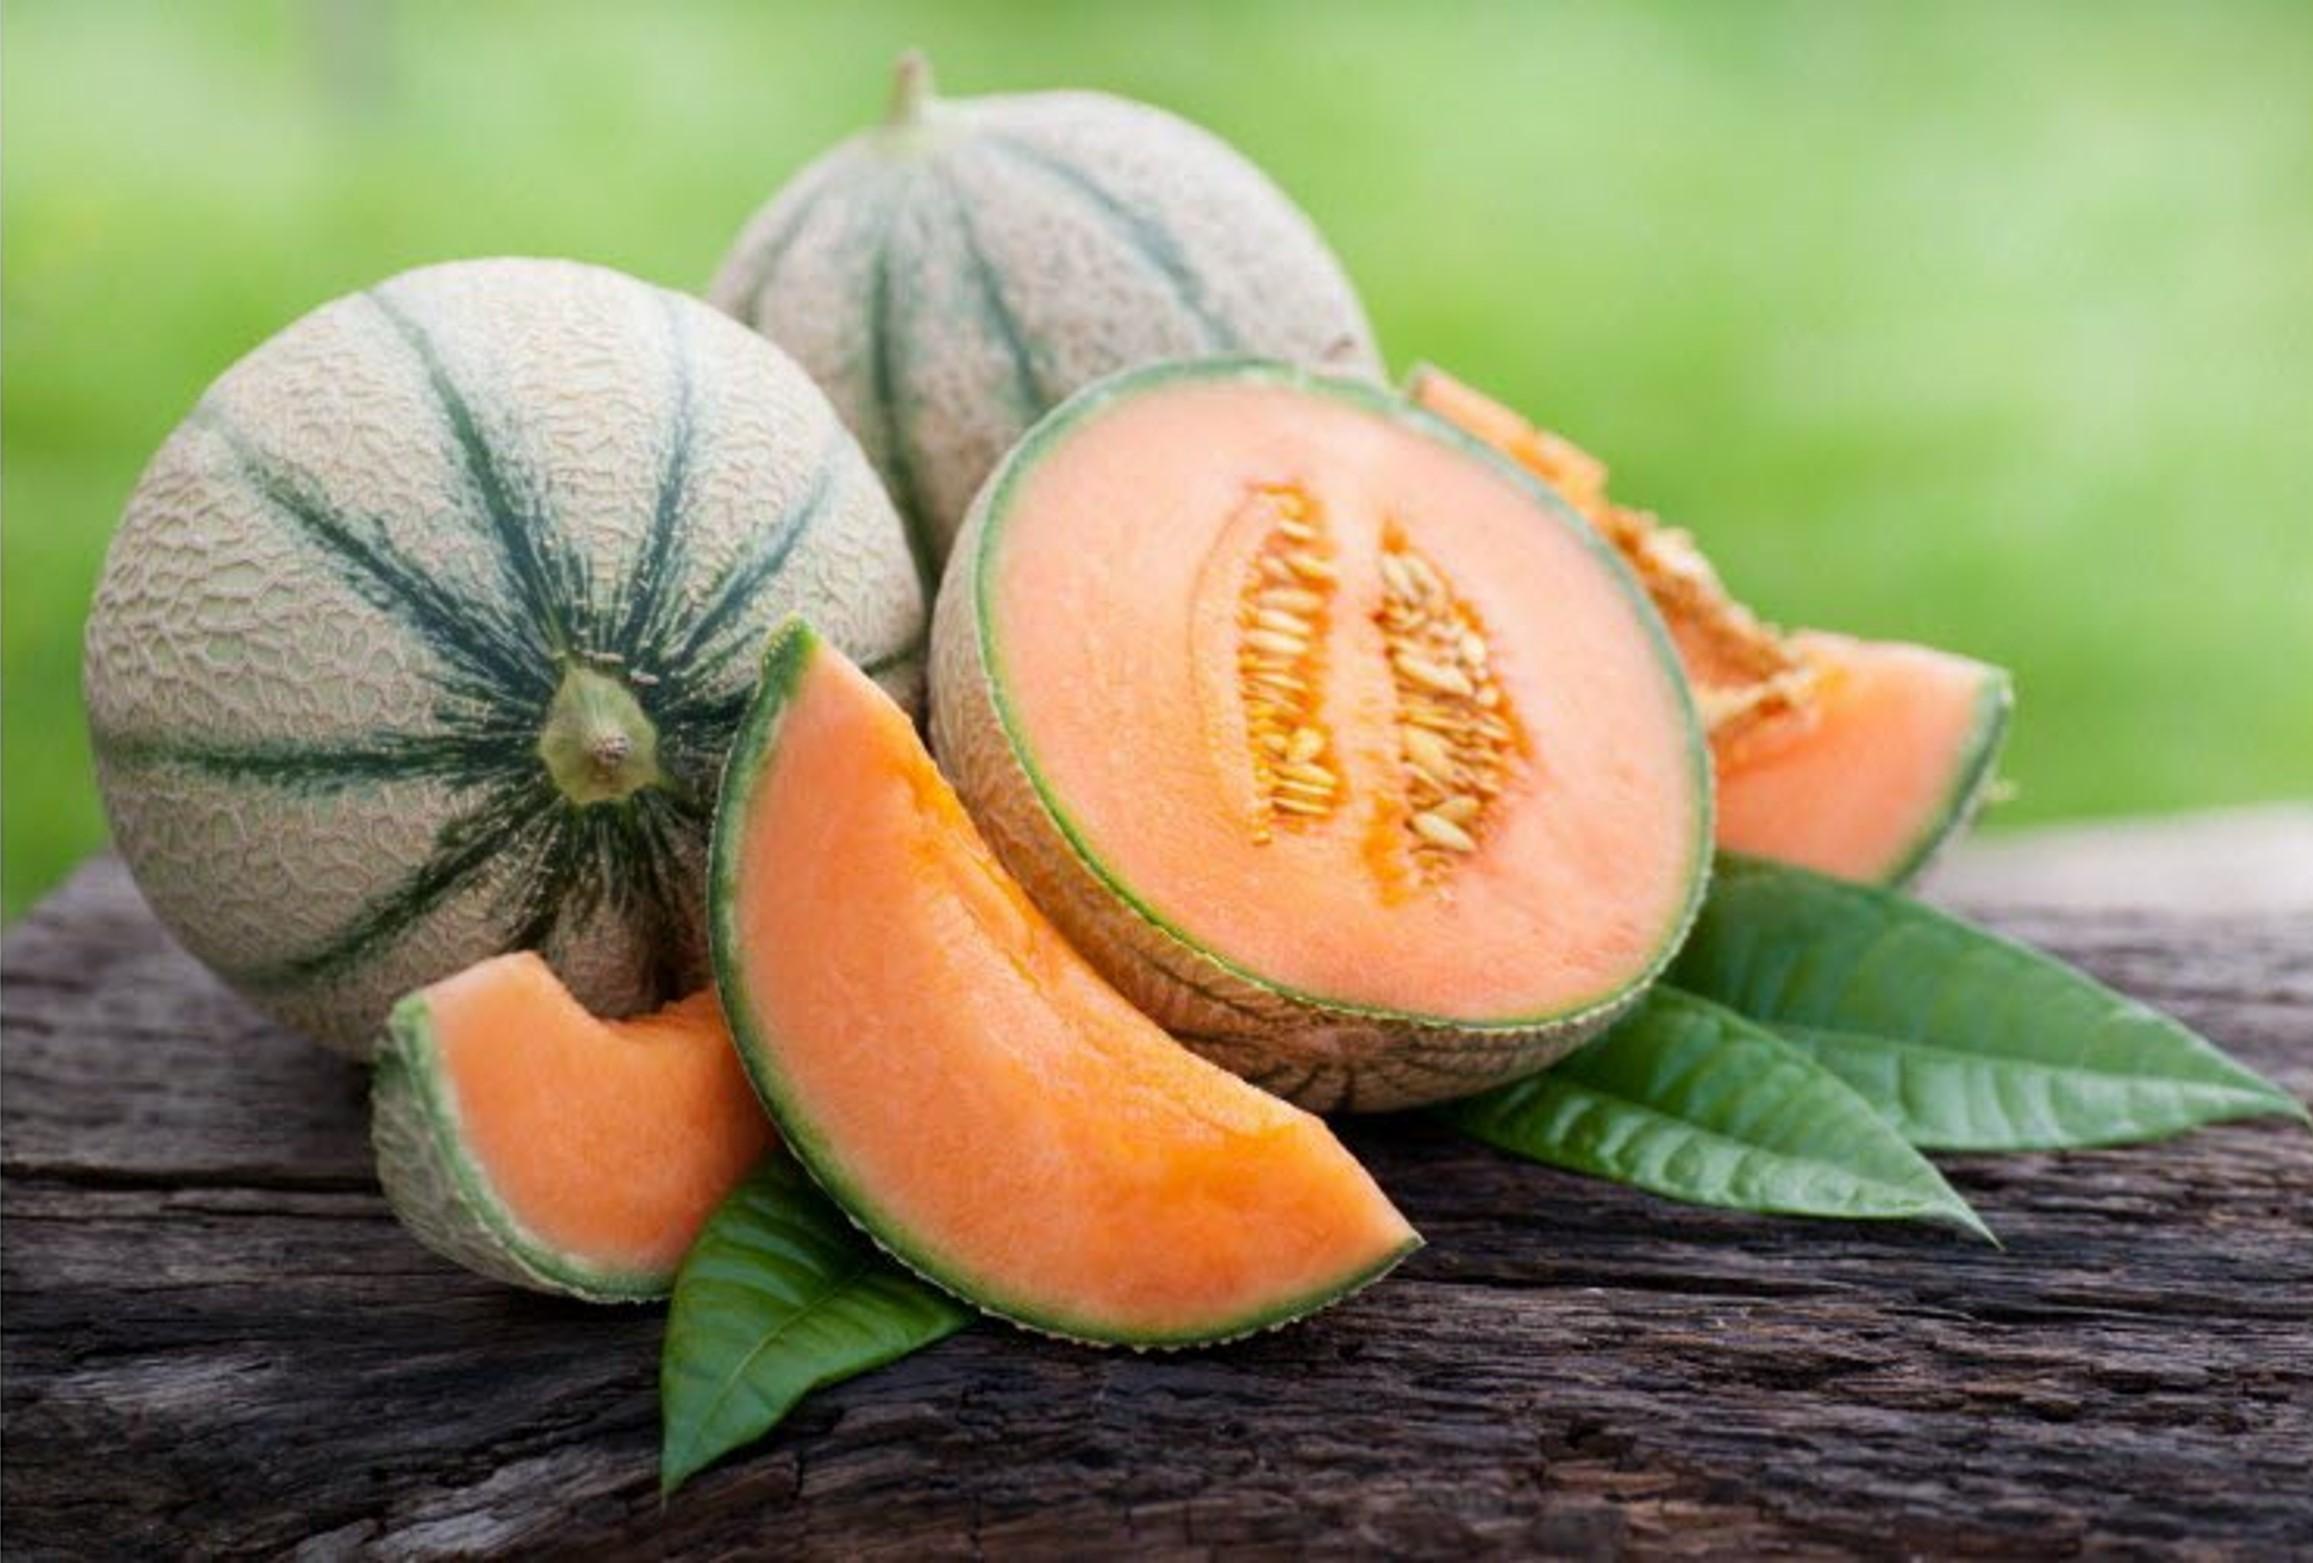 Notre fondant parfumé au parfum Melon est un parfum incontournable de l'été